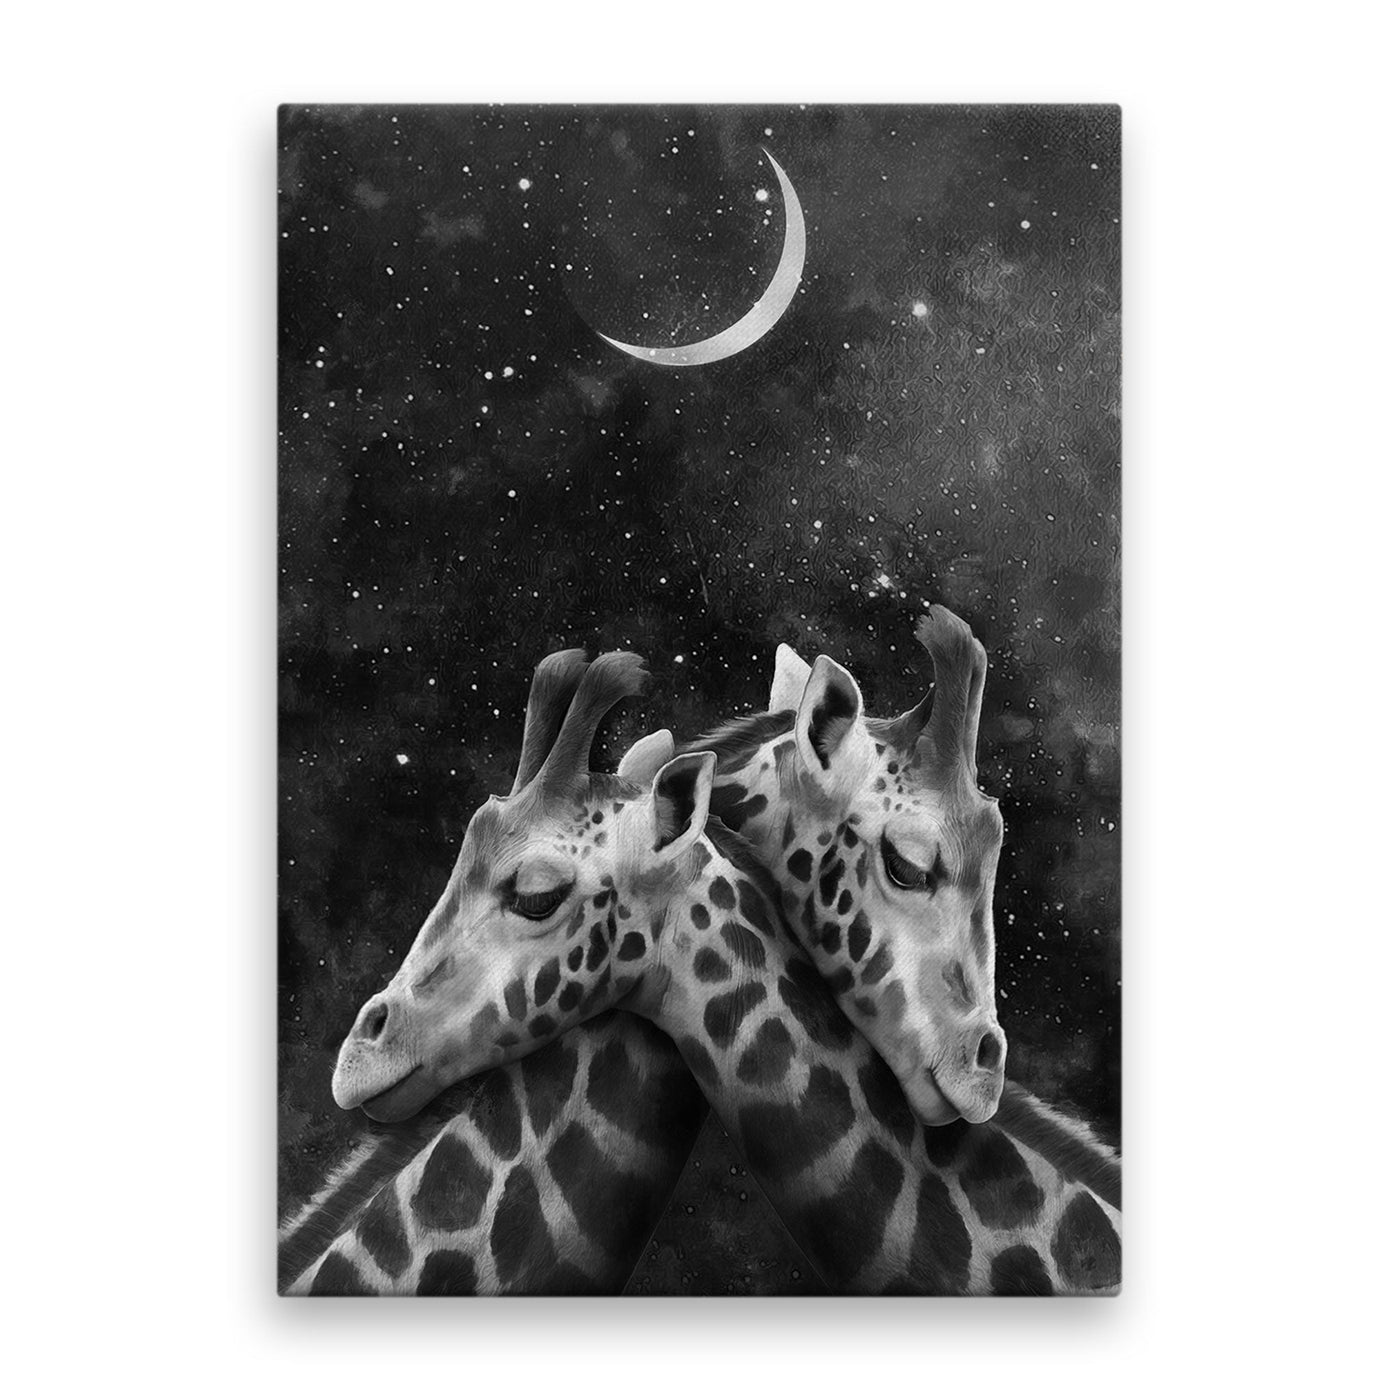 tablou-canvas-pentru-copii-ce-ilustreaza-un-cuplu-incantator-de-girafe-in-timpul-noptii-cu-un-fundal-intunecat-plin-de-stele-si-o-luna-stralucitoare-nighttime-romance